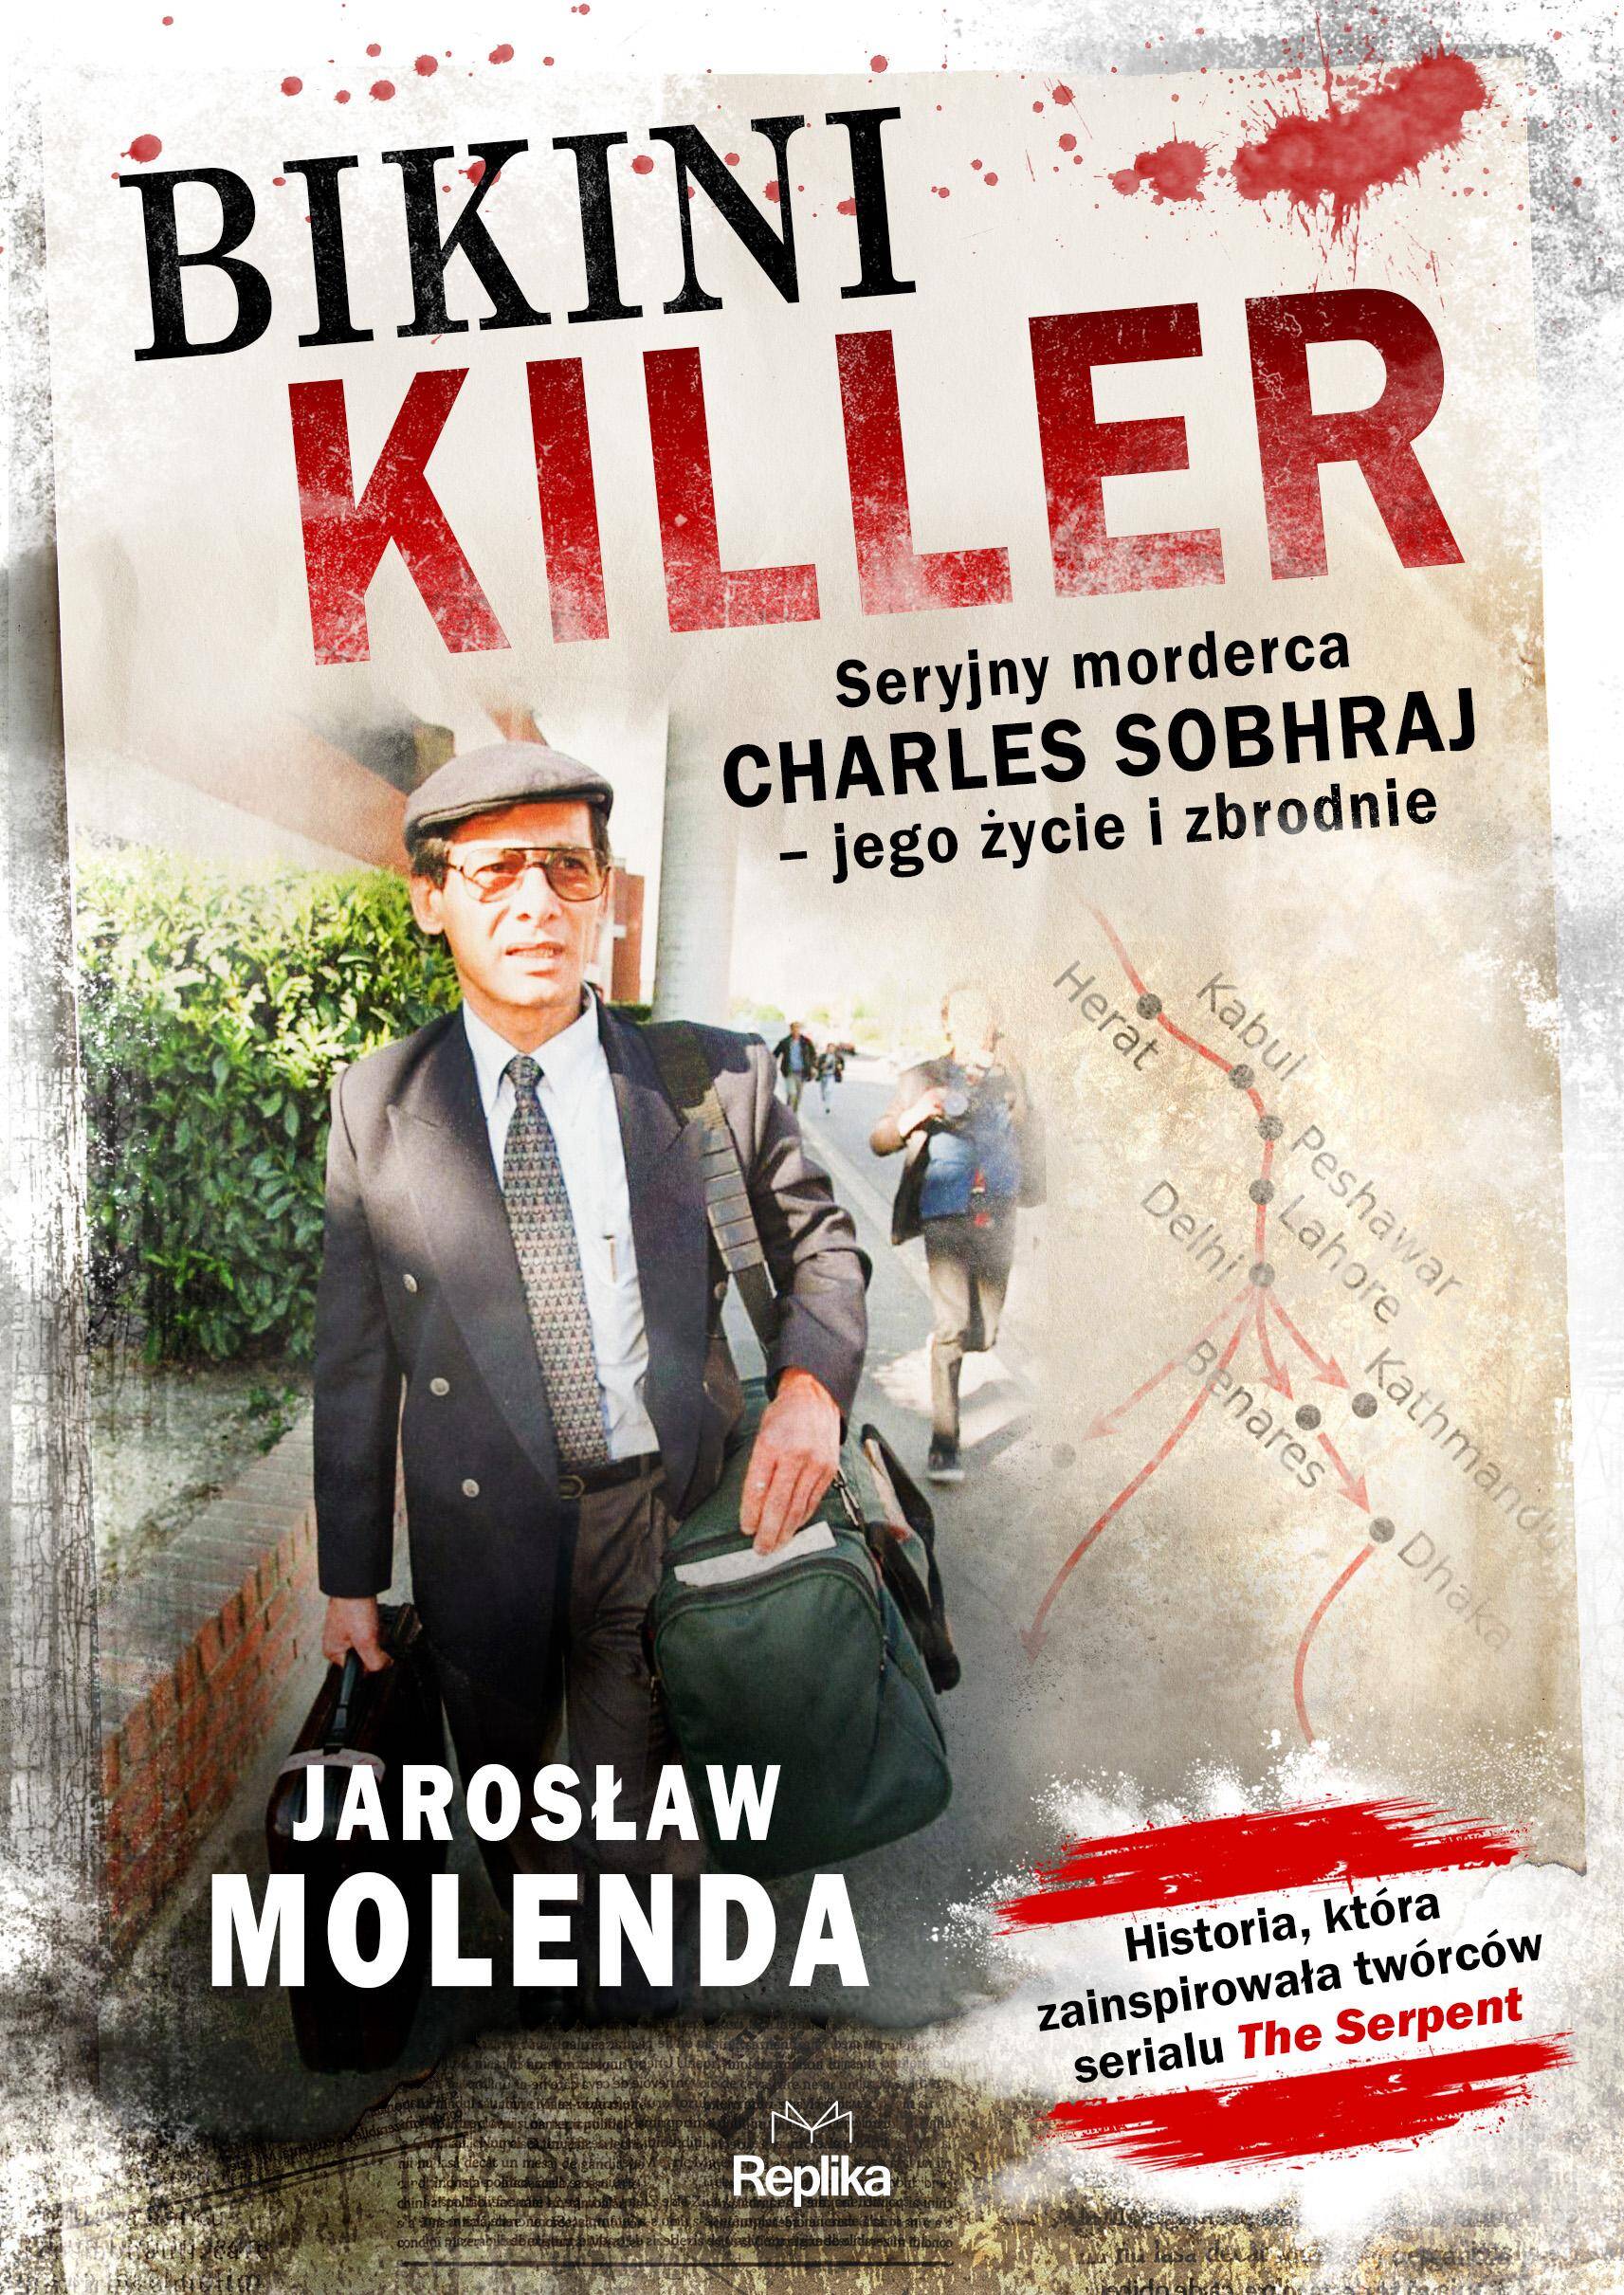 Bikini Killer. Seryjny morderca Charles Sobhraj, jego życie i zbrodnie